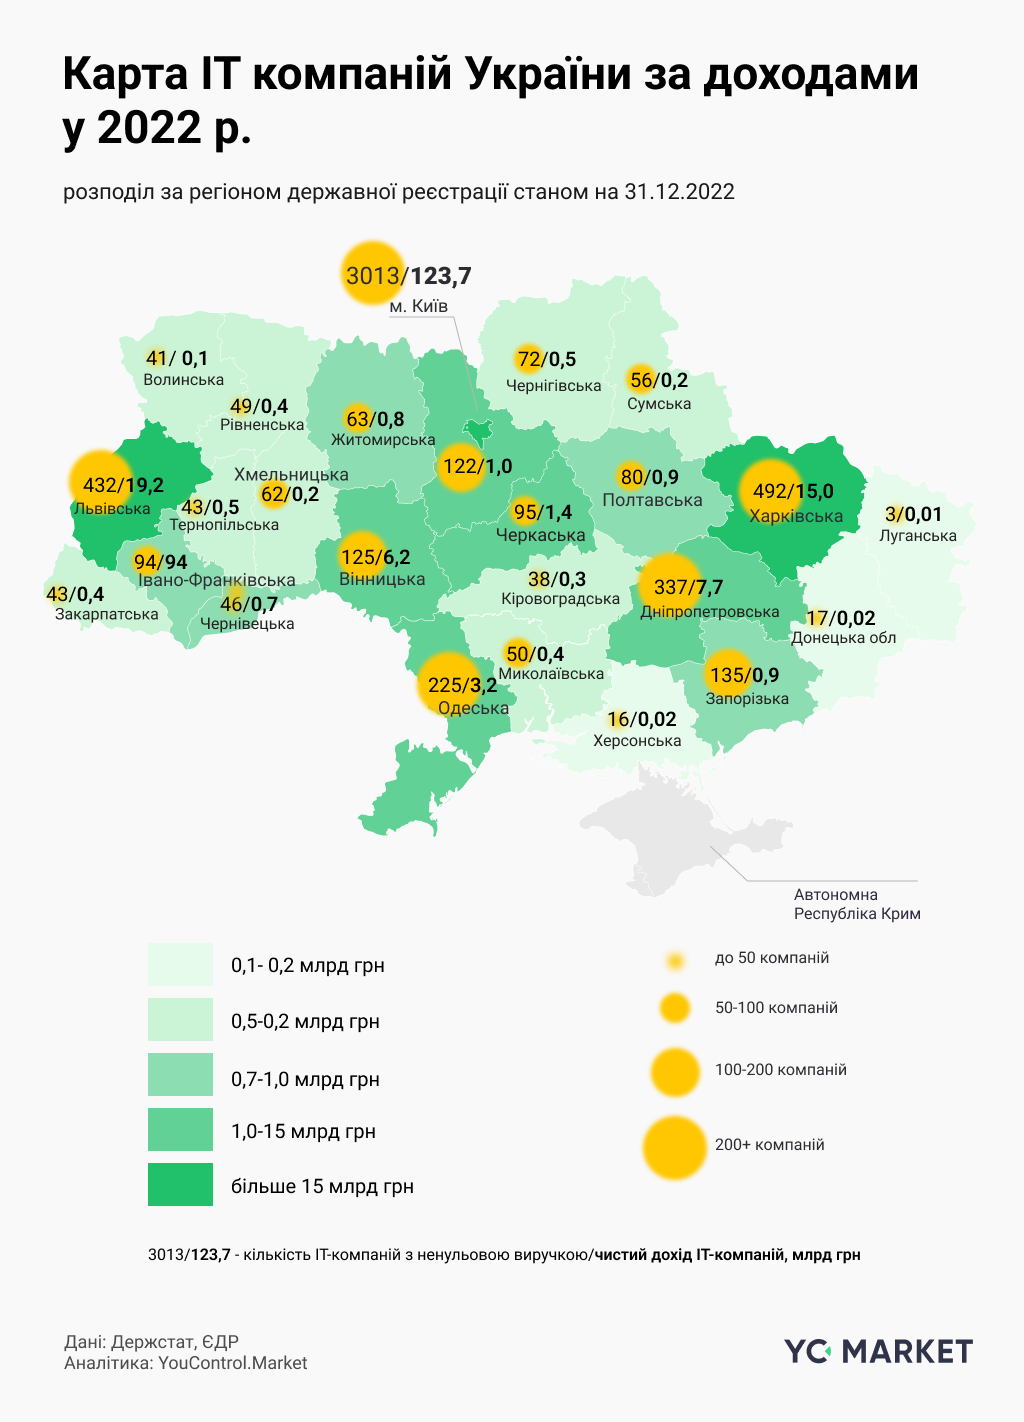 Карта ИТ-компаний Украины по доходам в 2022 г.